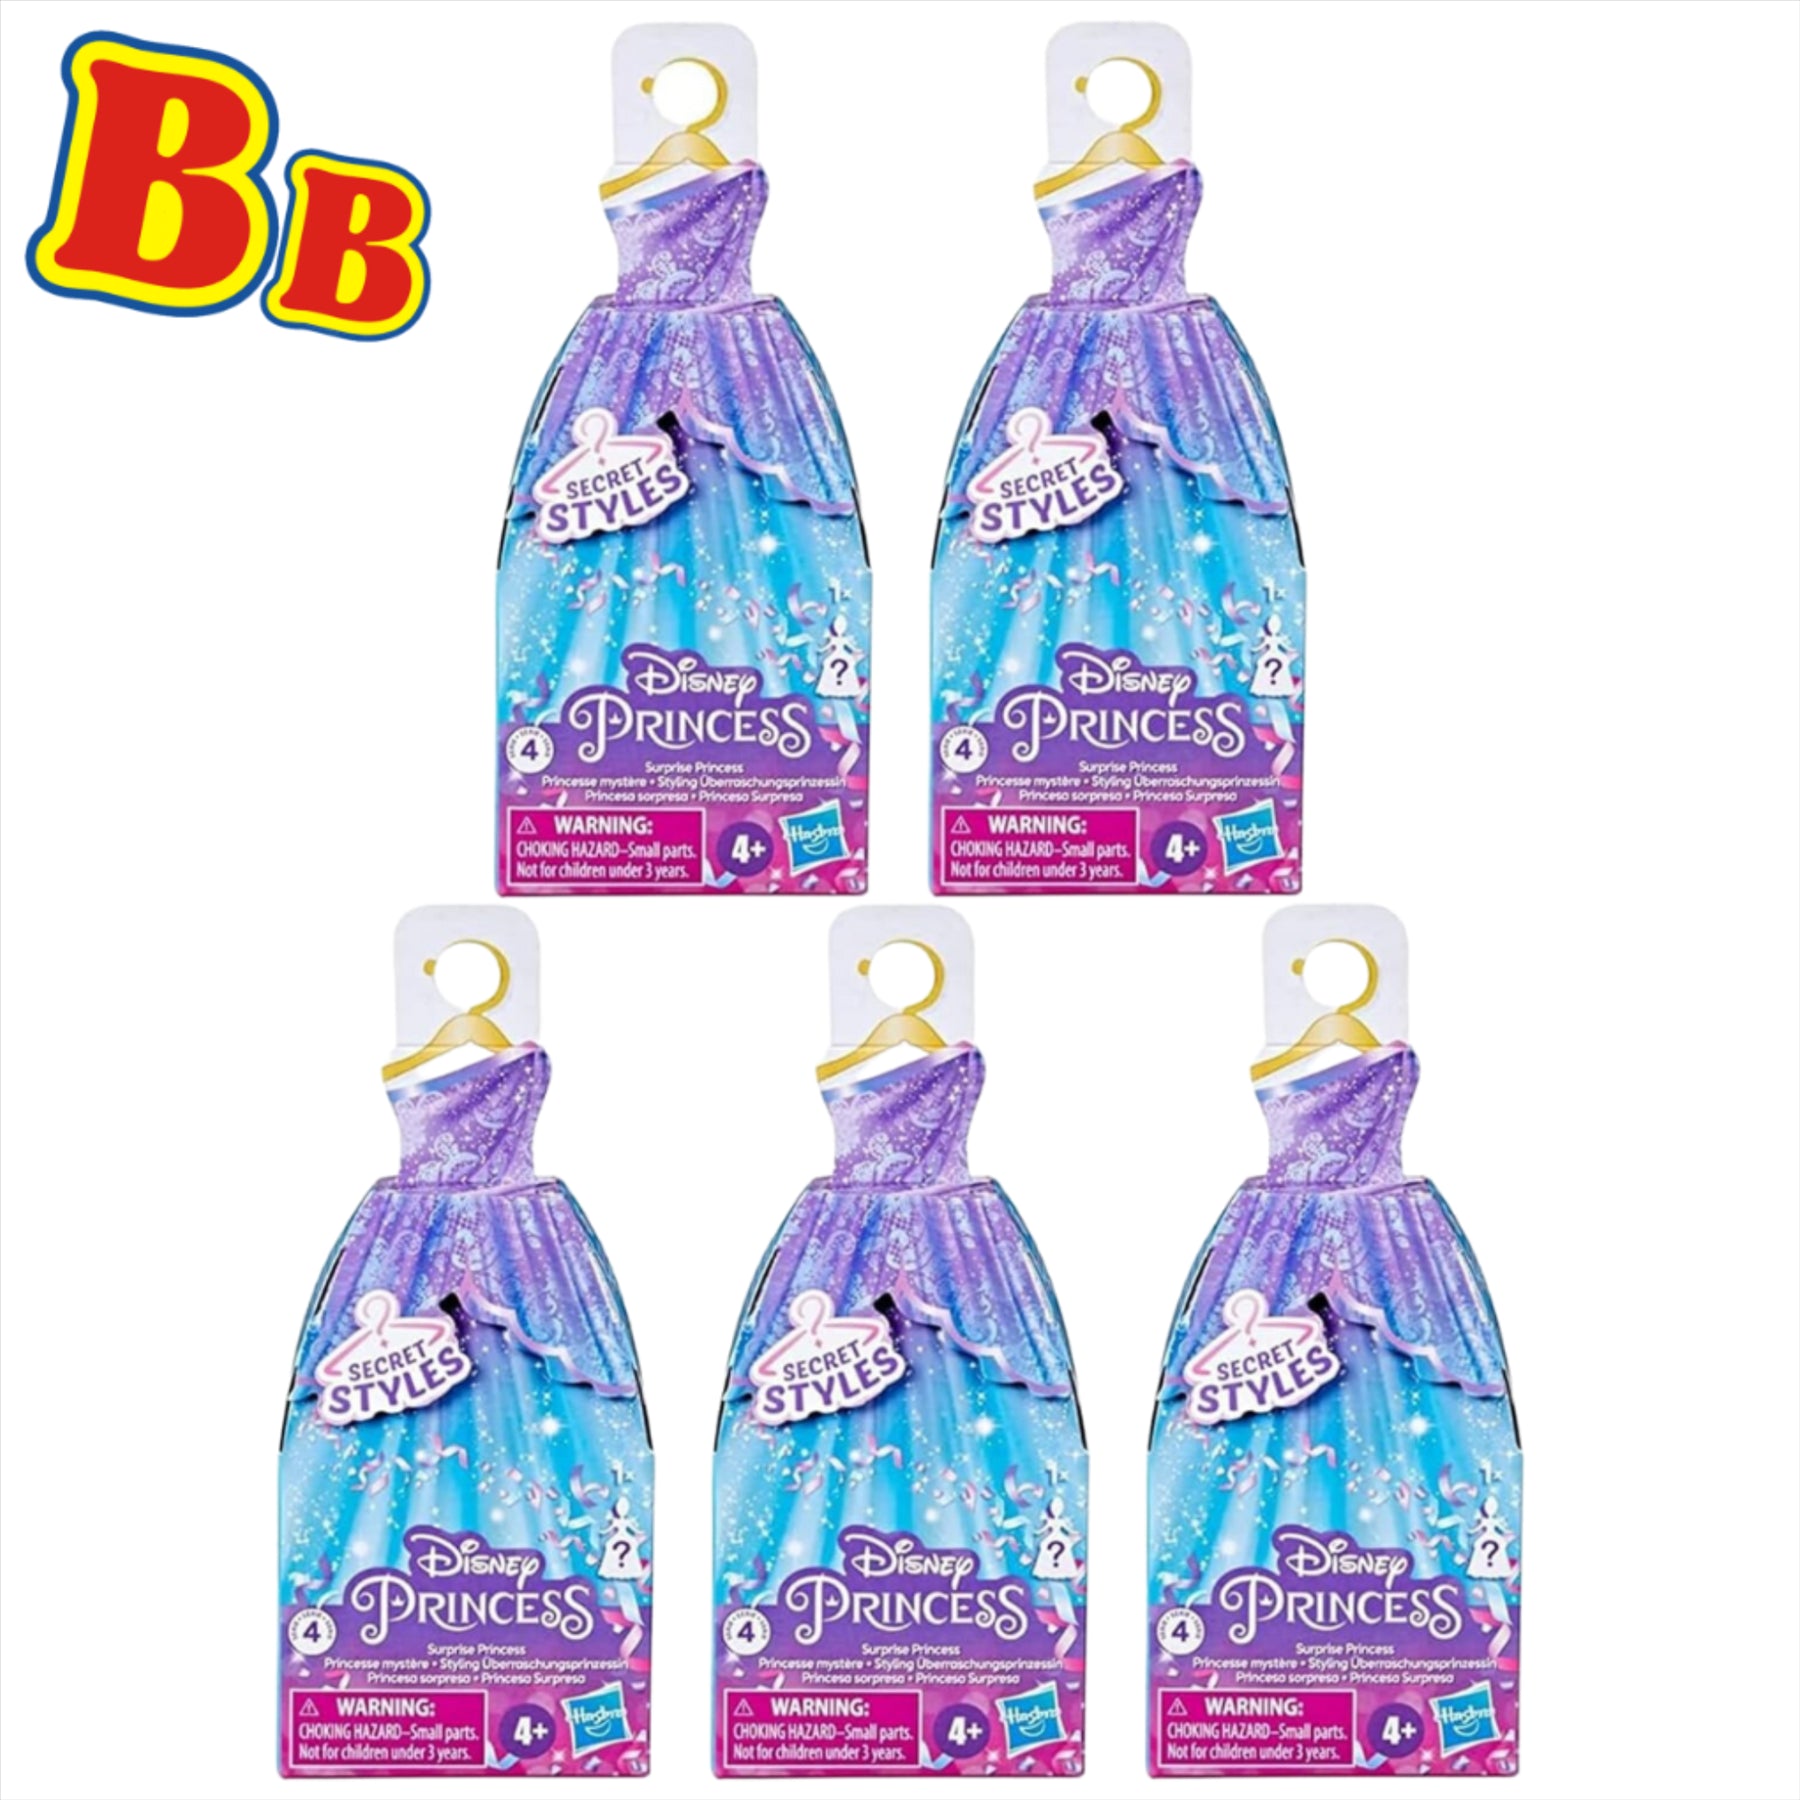 Disney Princess Secret Styles Series 4 Blind Box 3.5" 9cm Figures - Pack of 5 - Toptoys2u